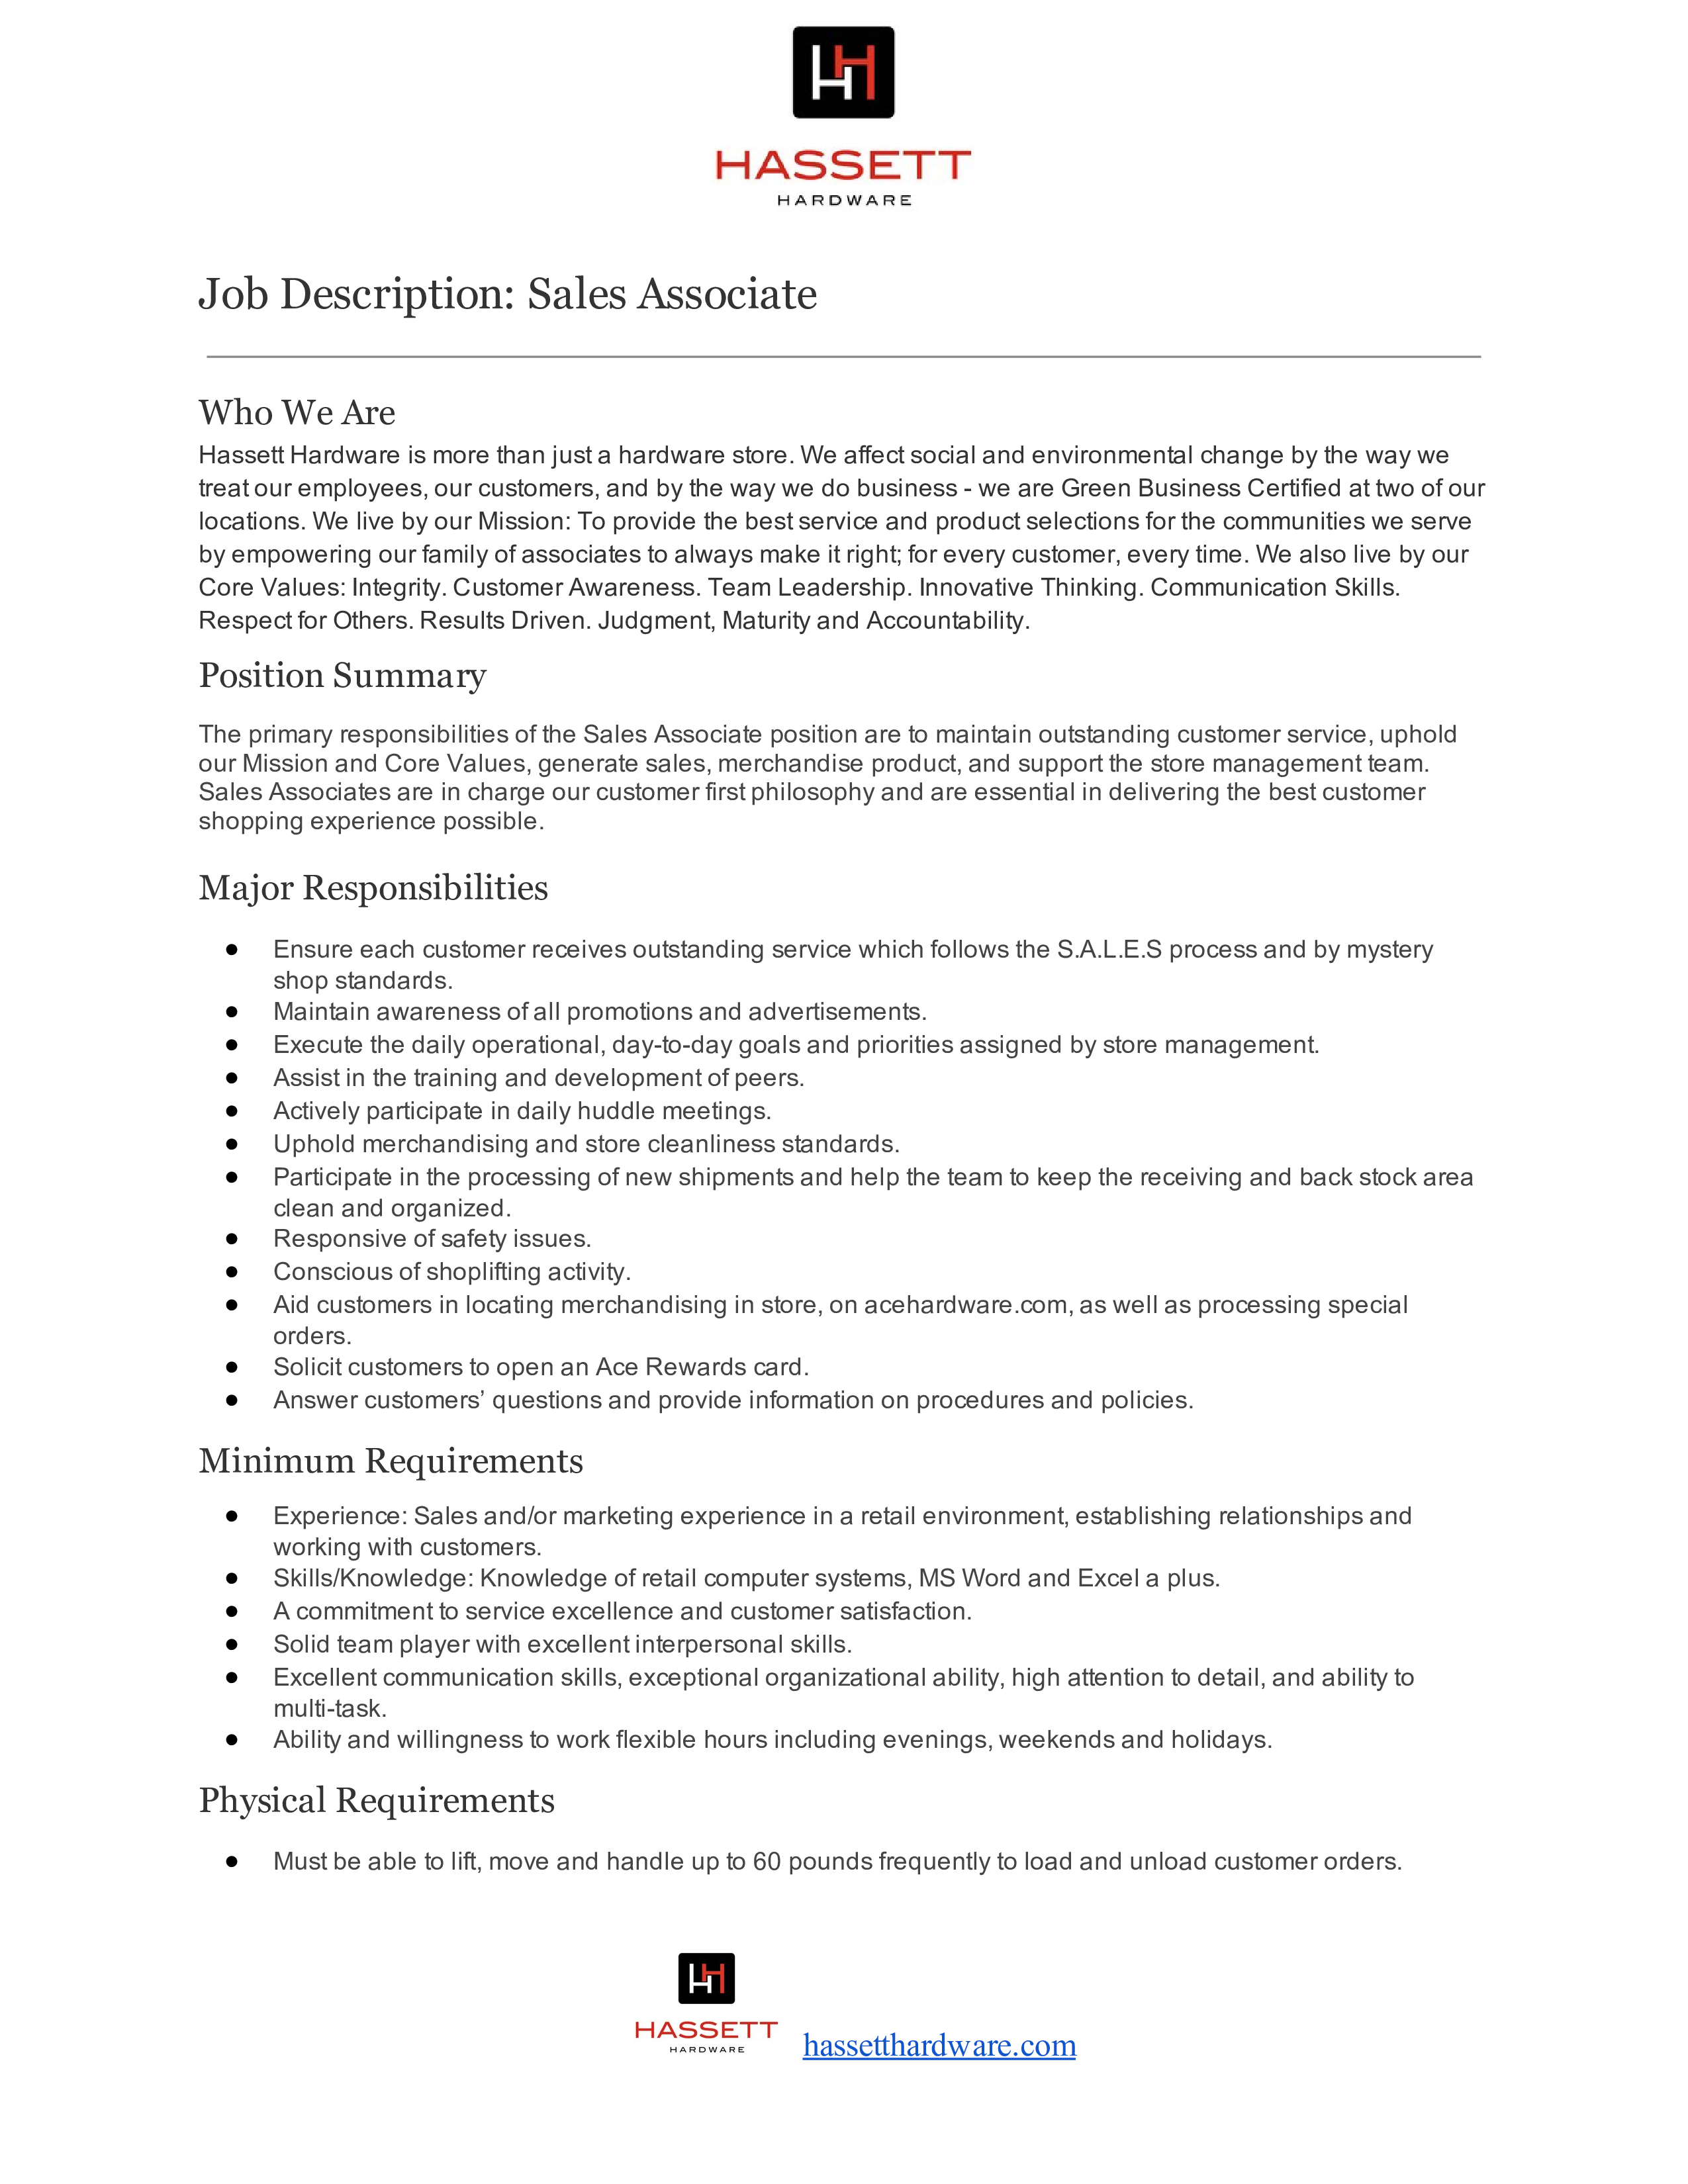 Head sales associate job description